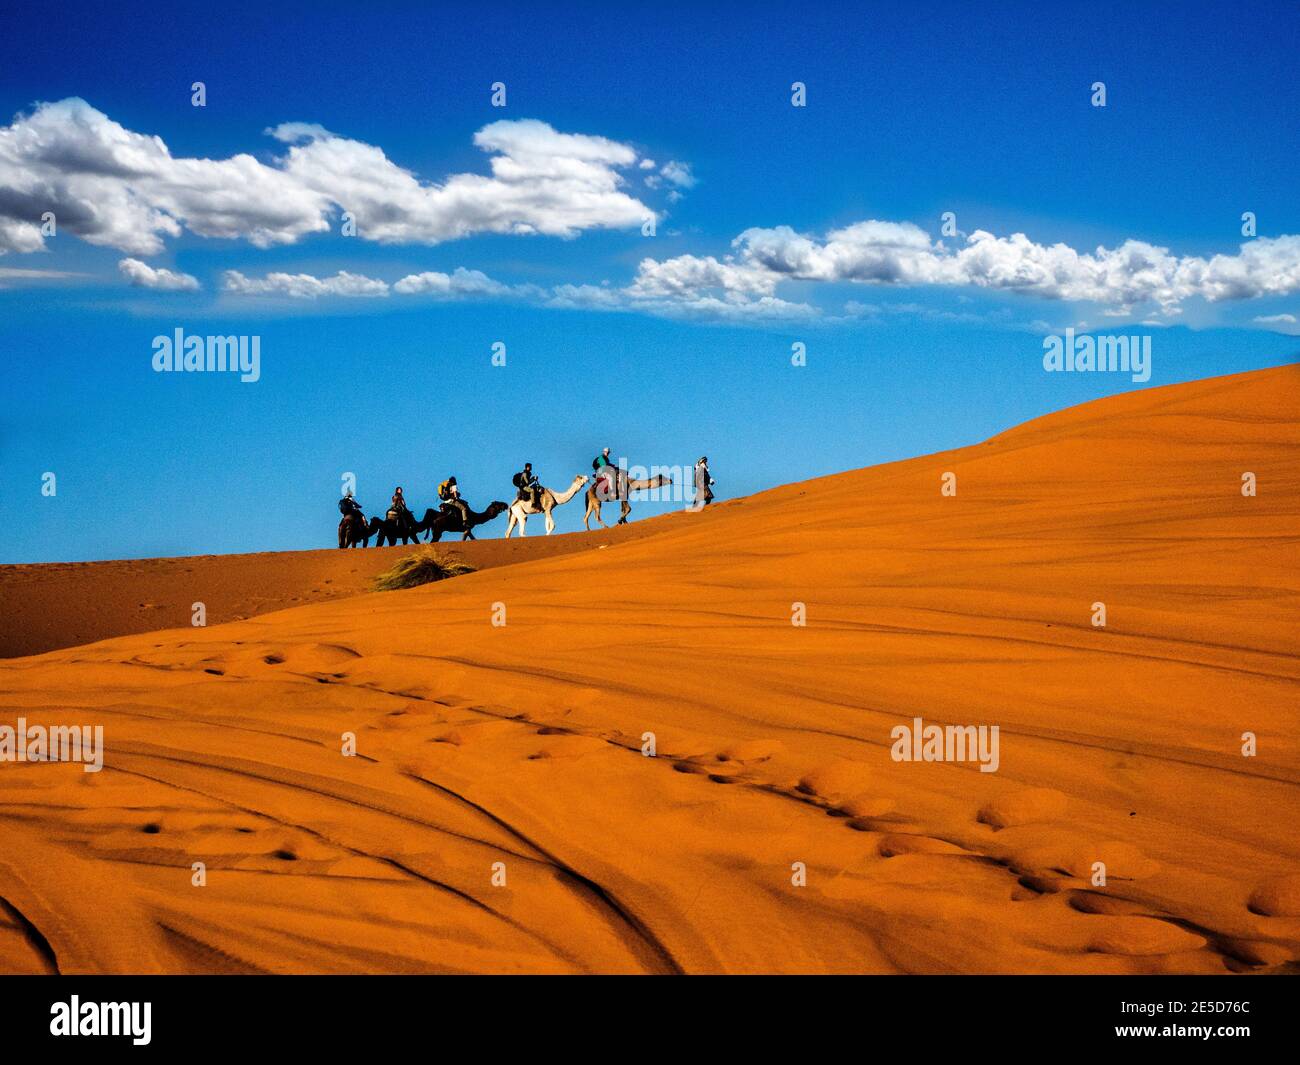 Camel train through the Sahara Desert, Morocco Stock Photo